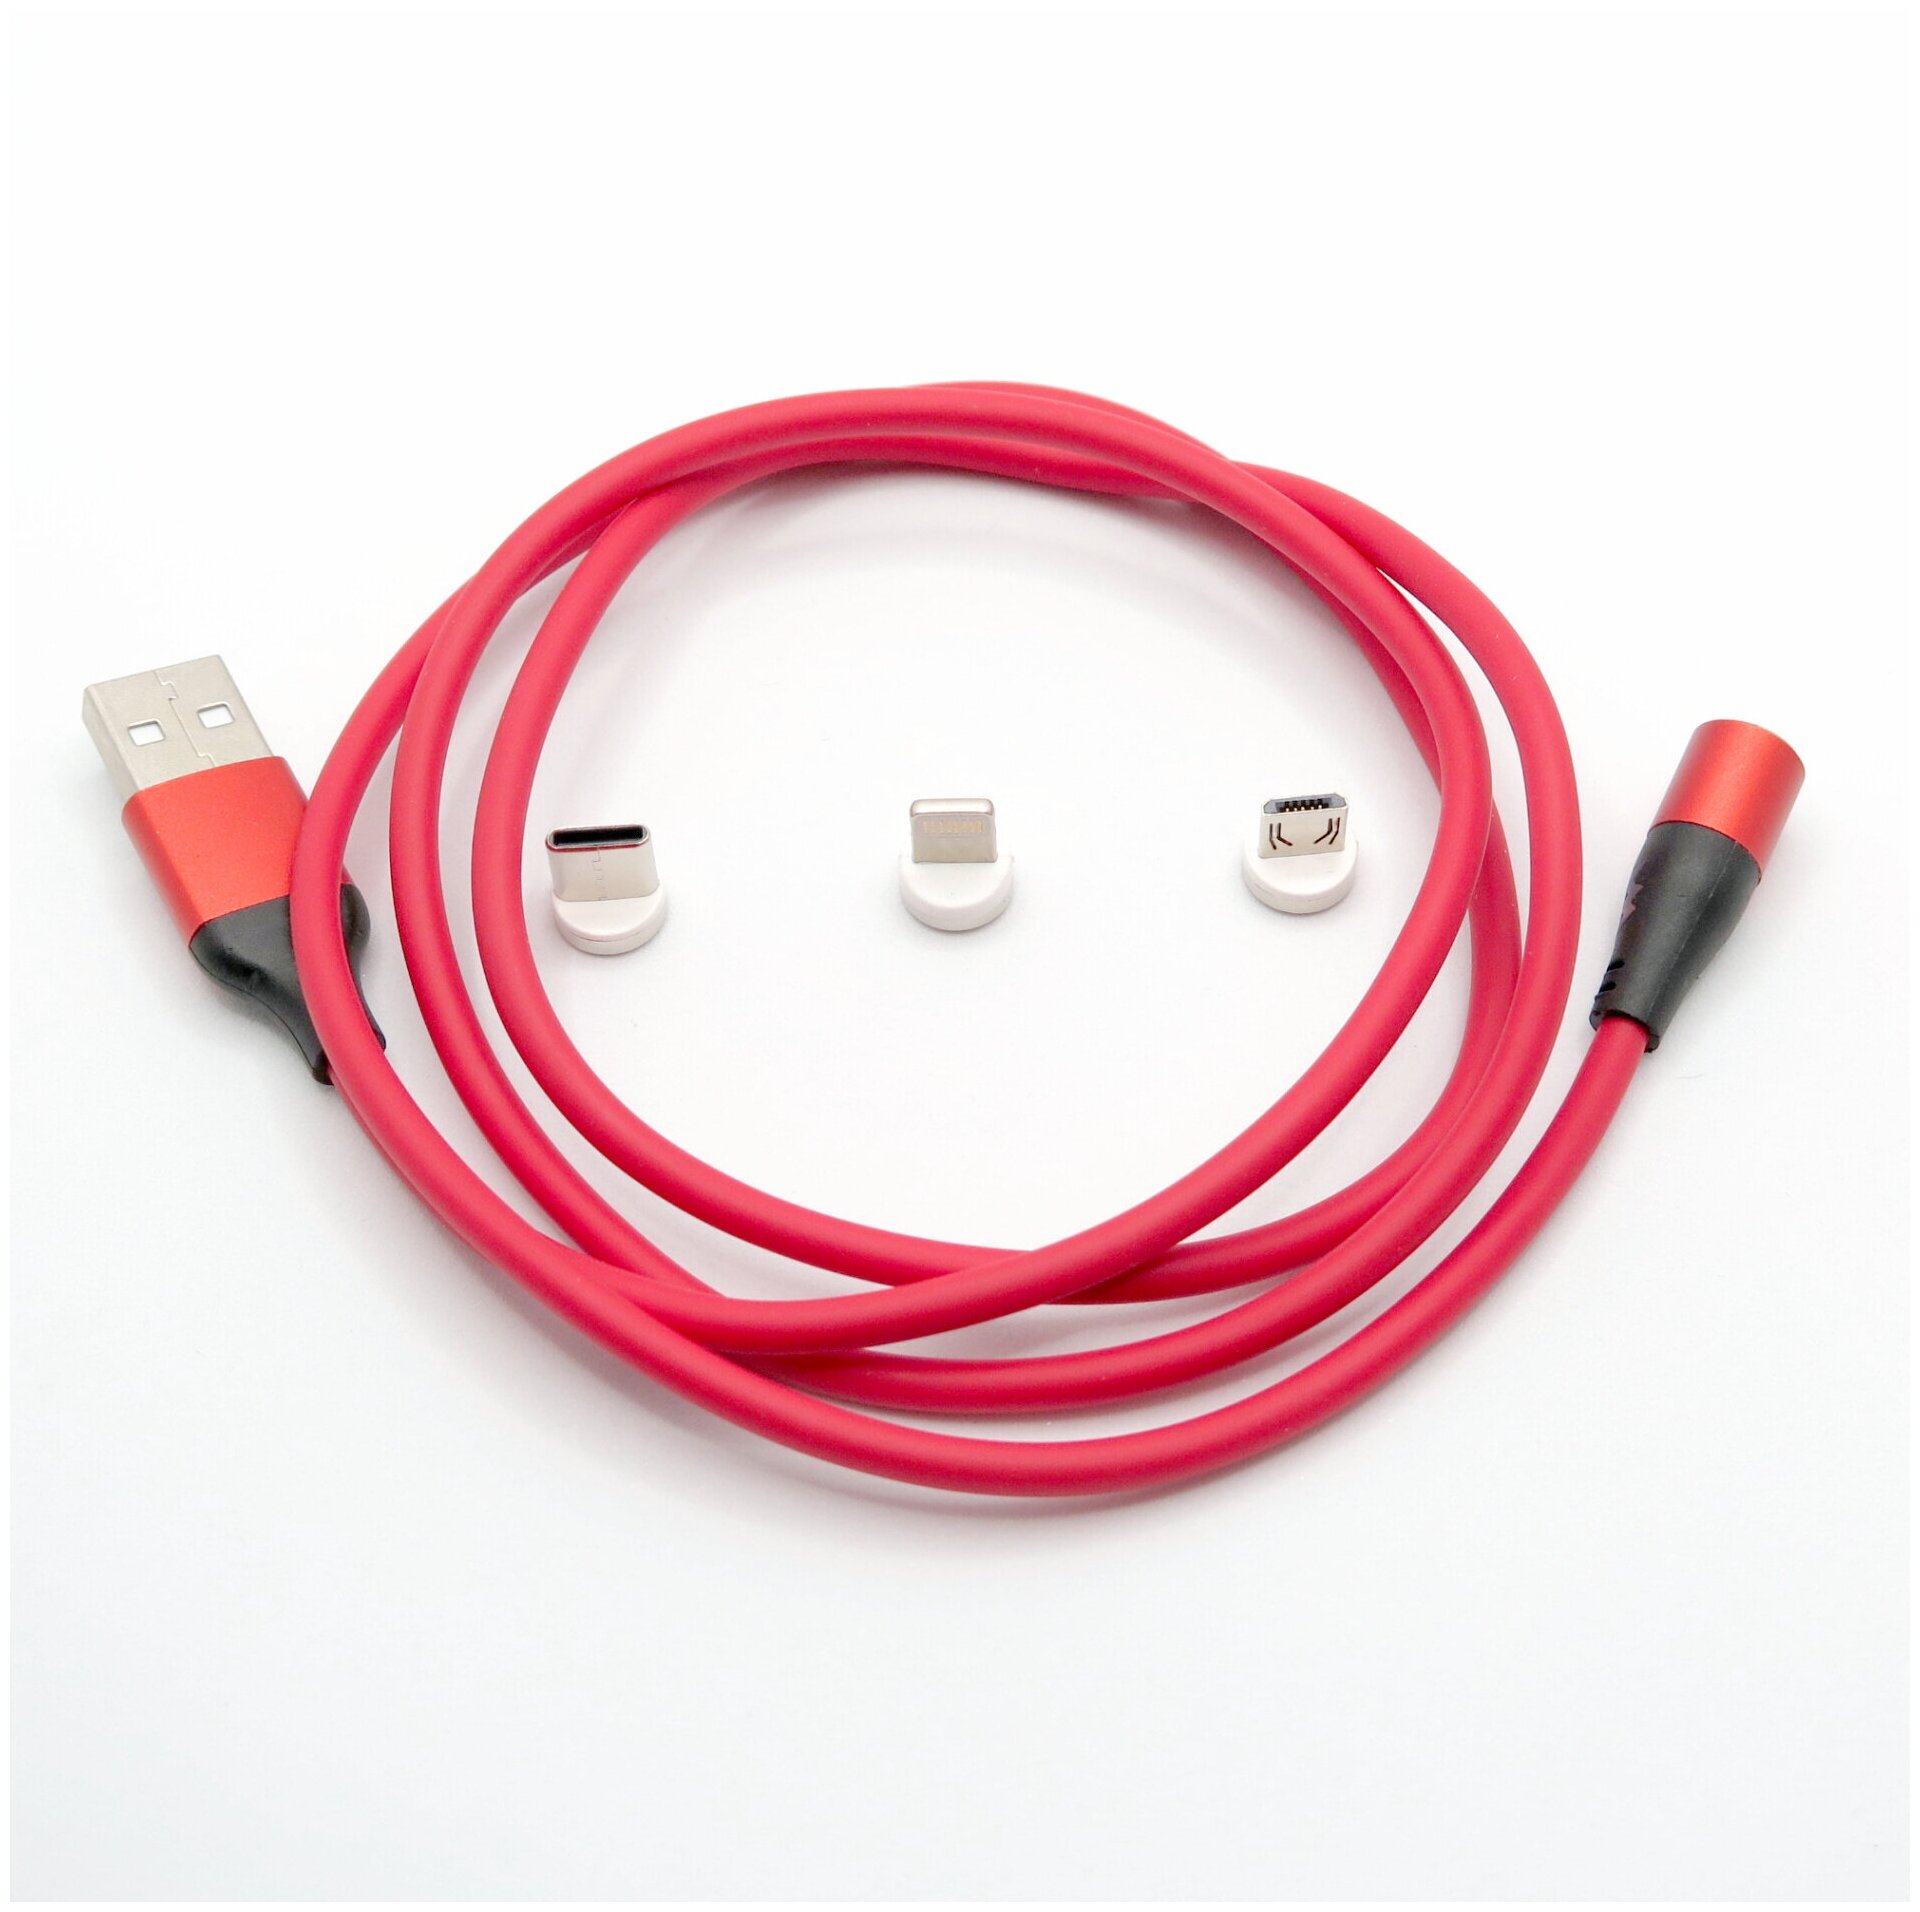 Кабель VAORLO магнитный 3 в 1 / провод для зарядки и передачи данных / шнур универсальный Lightning (iPhone iPad) + Type-C + Micro-USB (Android)